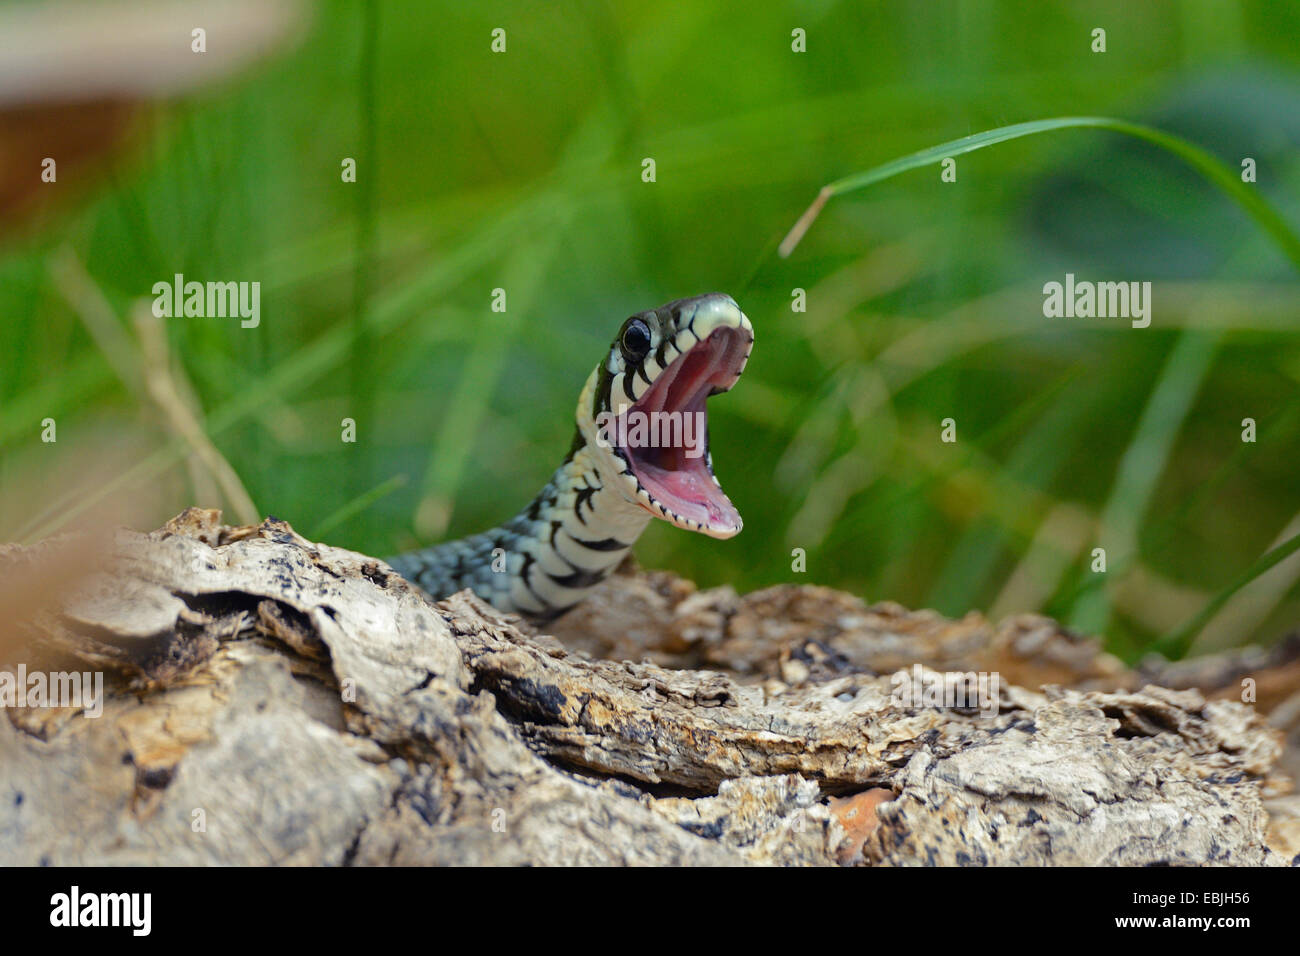 grass snake (Natrix natrix), mouth wide open, Germany Stock Photo